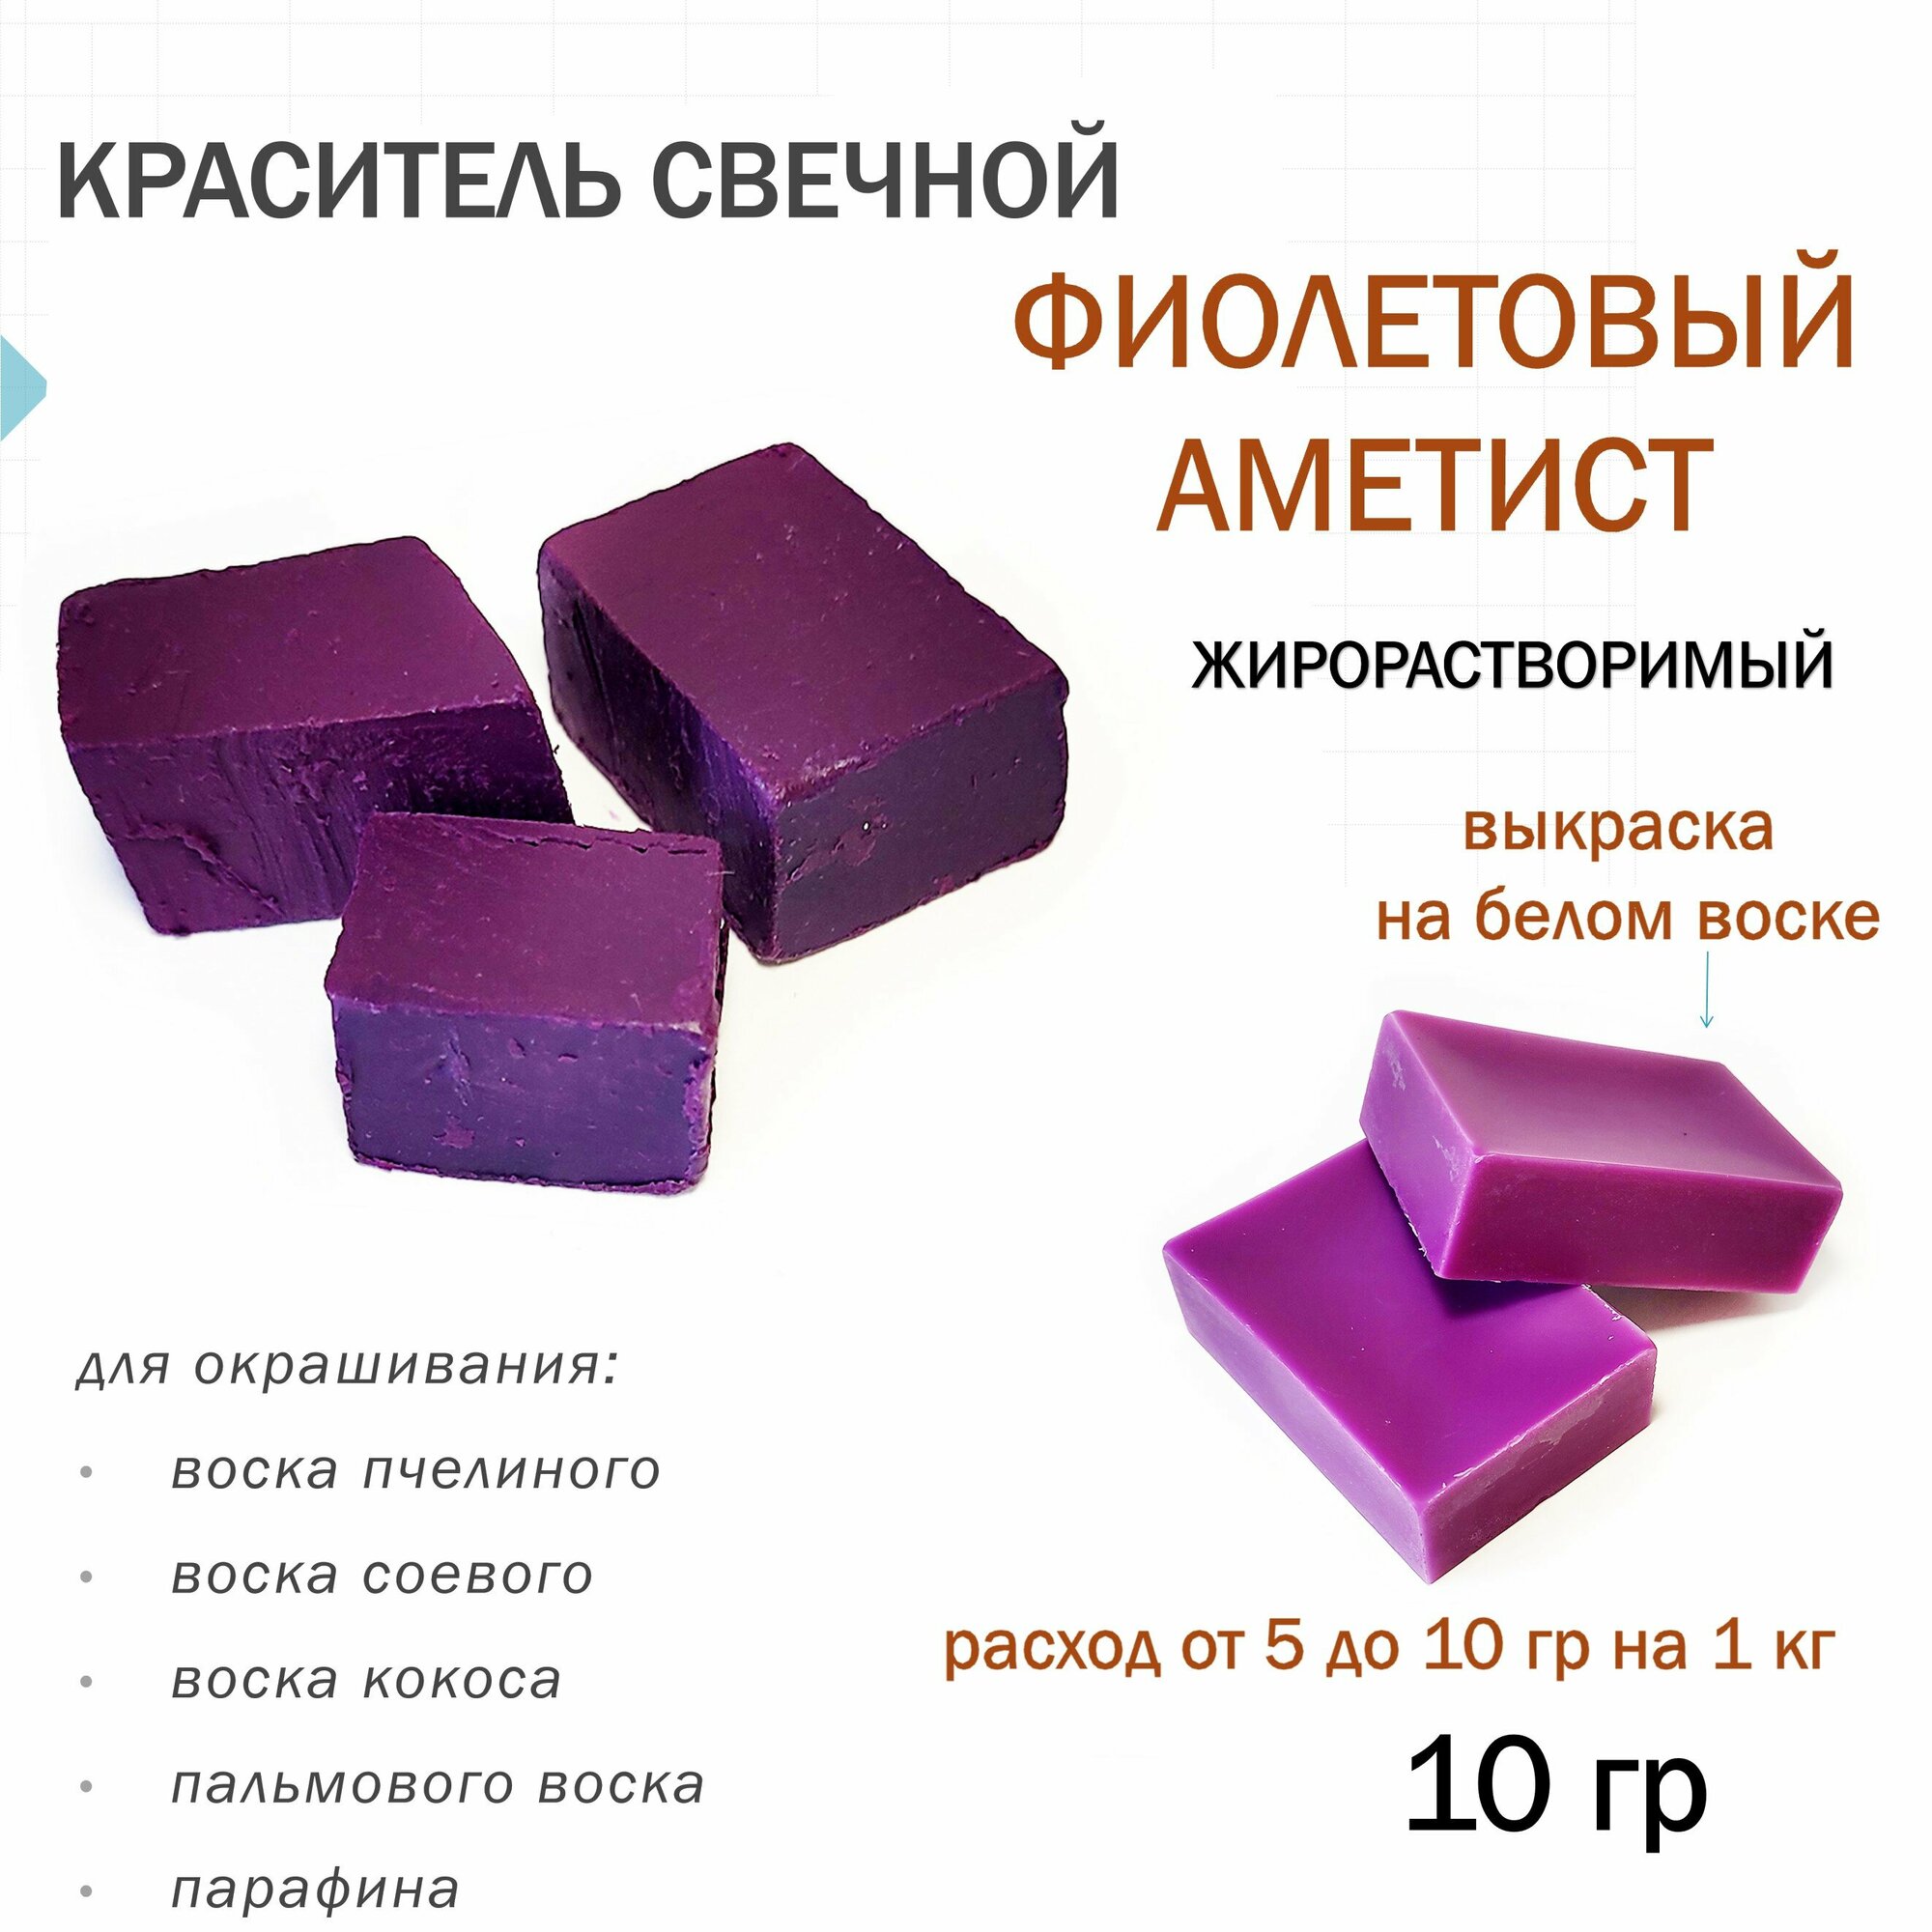 Краситель свечной фиолетовый аметист, для воска, парафина (10 гр)